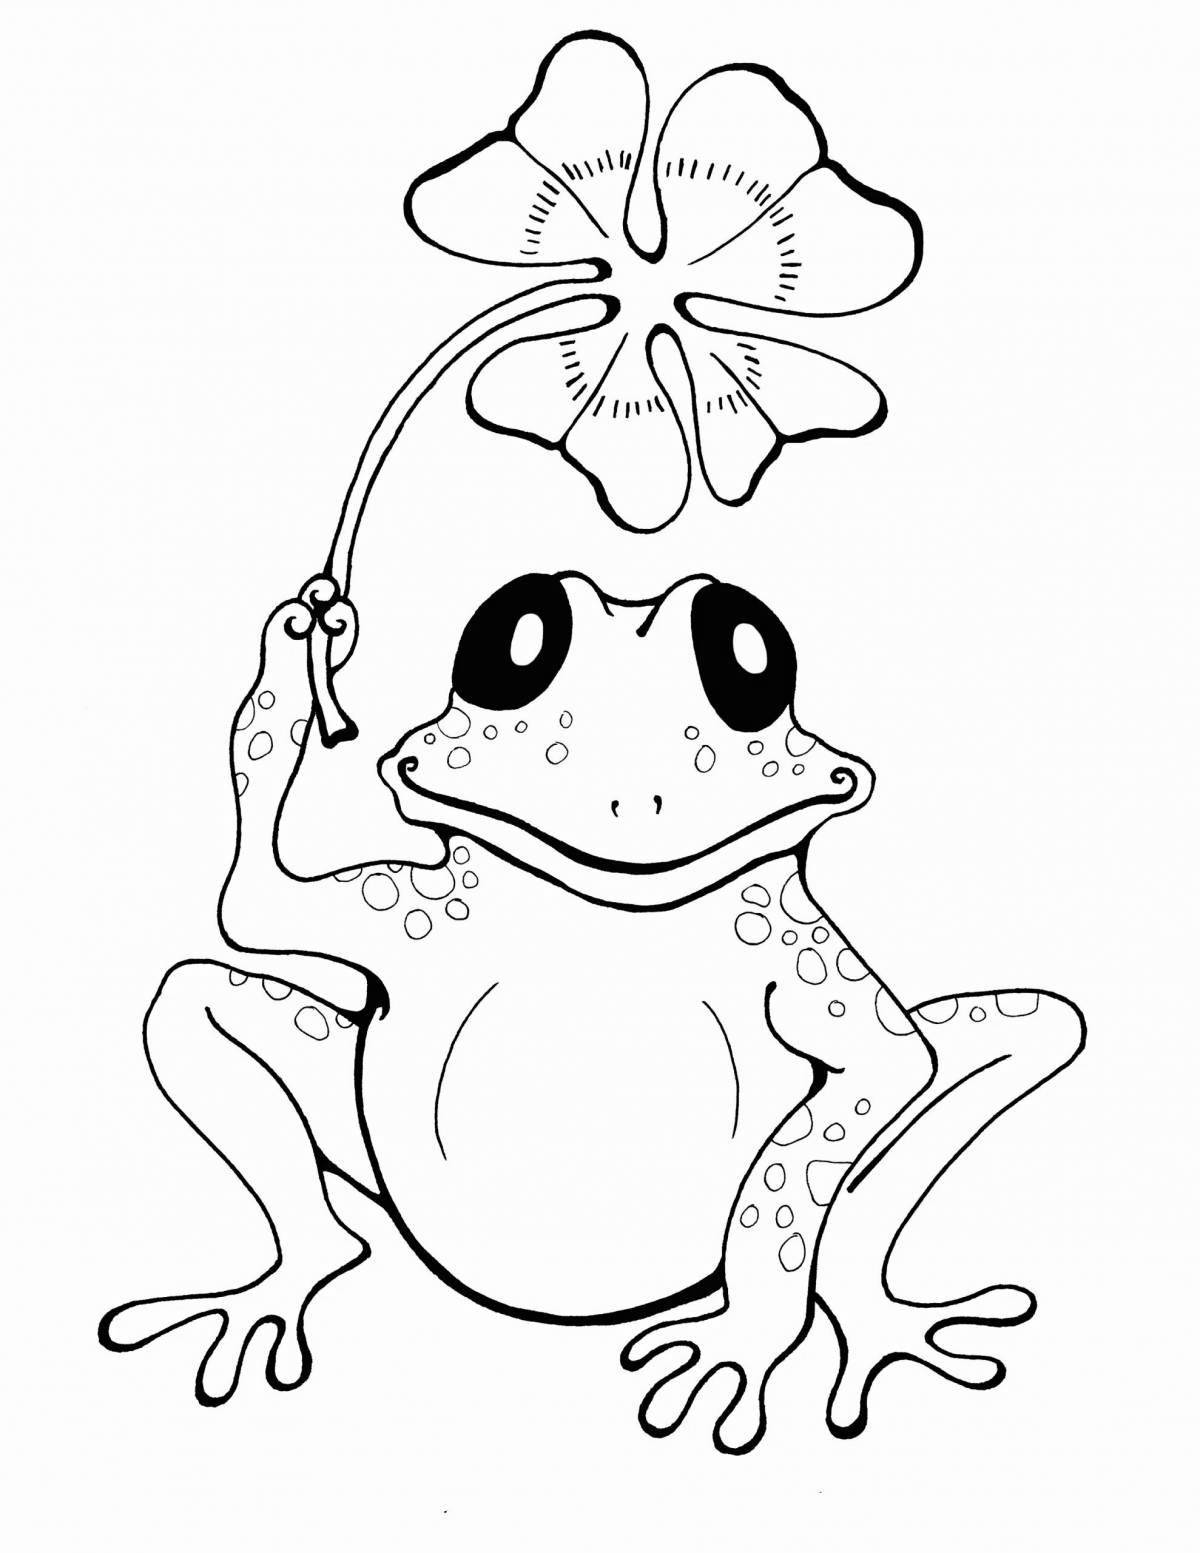 Fun coloring cute frog